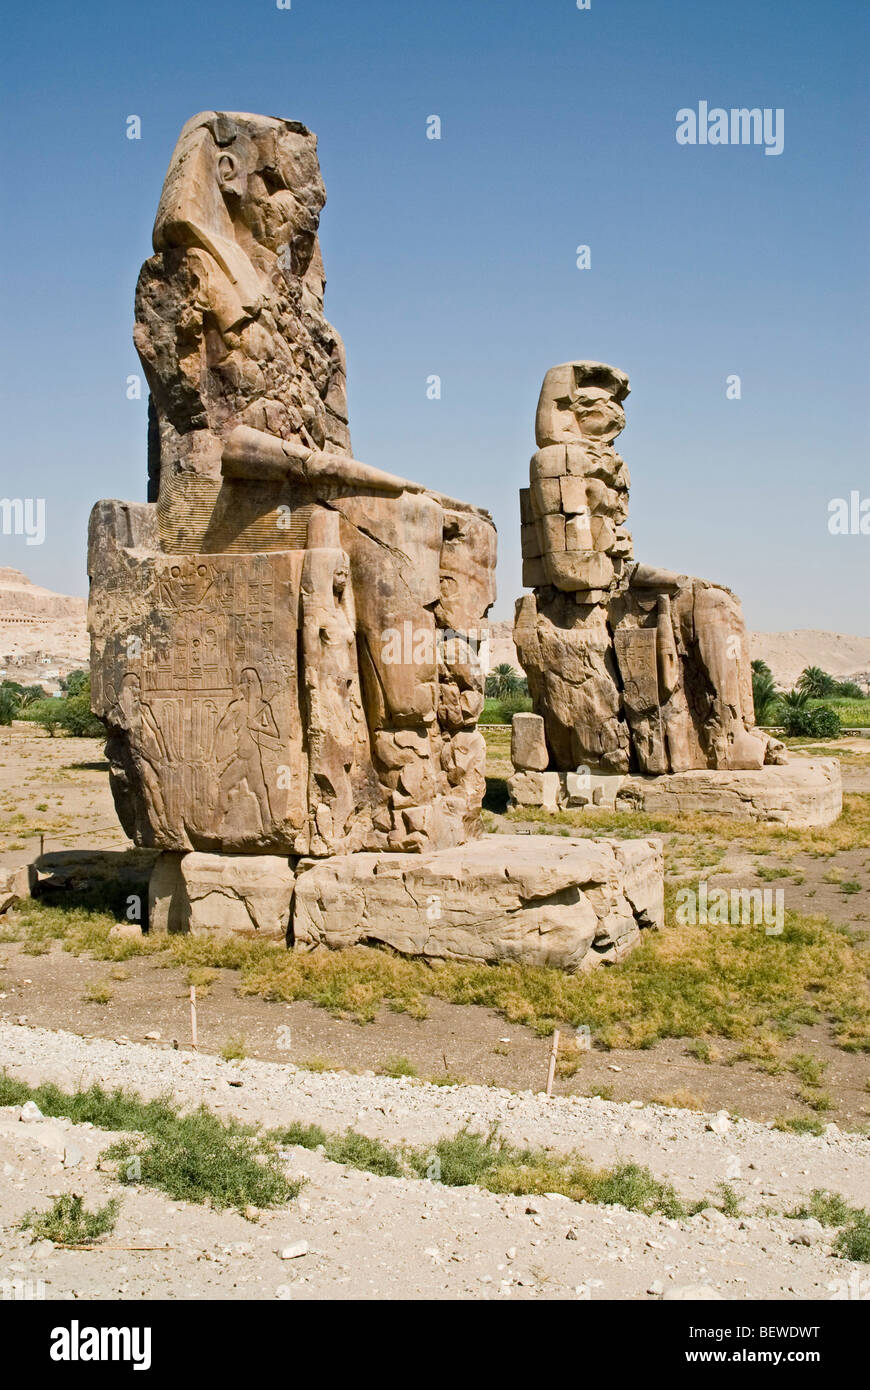 Colossi of Memnon at Luxor, Egypt Stock Photo